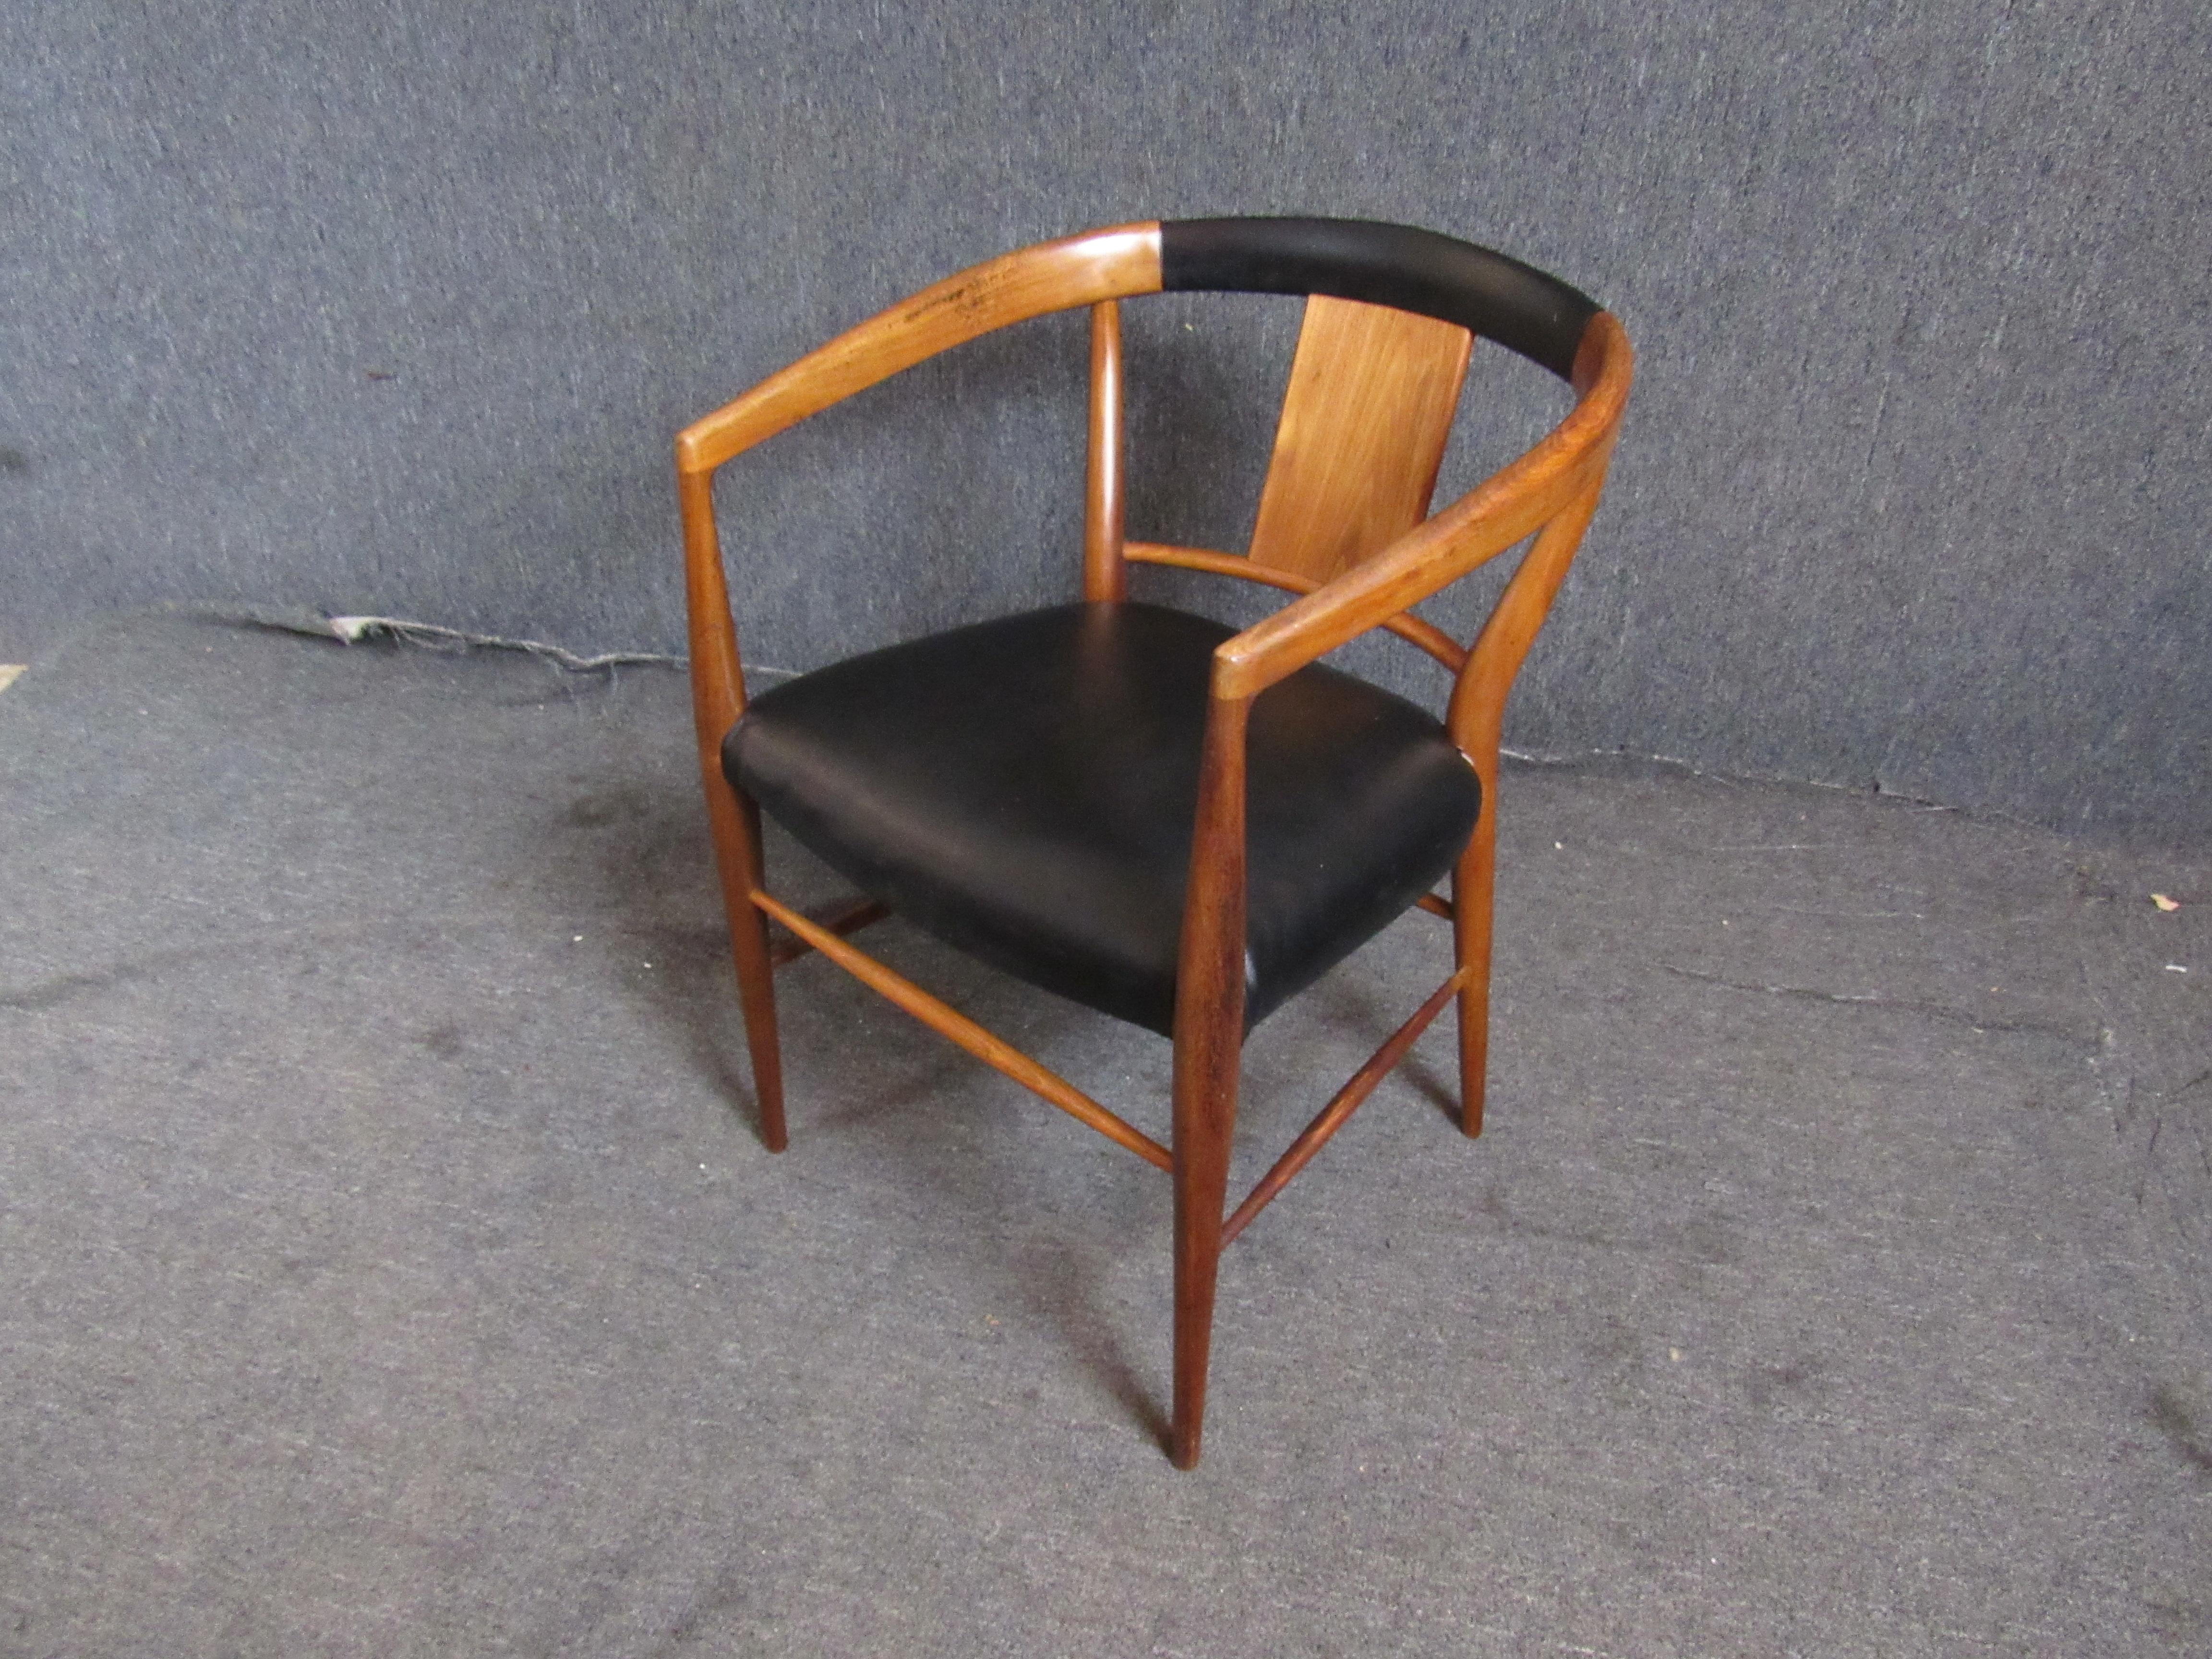 Sessel mit runder Rückenlehne von Henredon für die Cantonesian Collection. Tolle Form A aus der Mitte des Jahrhunderts mit geschnitztem Holzrahmen und schwarzer Sitzfläche.
Bitte bestätigen Sie den Standort NY oder NJ